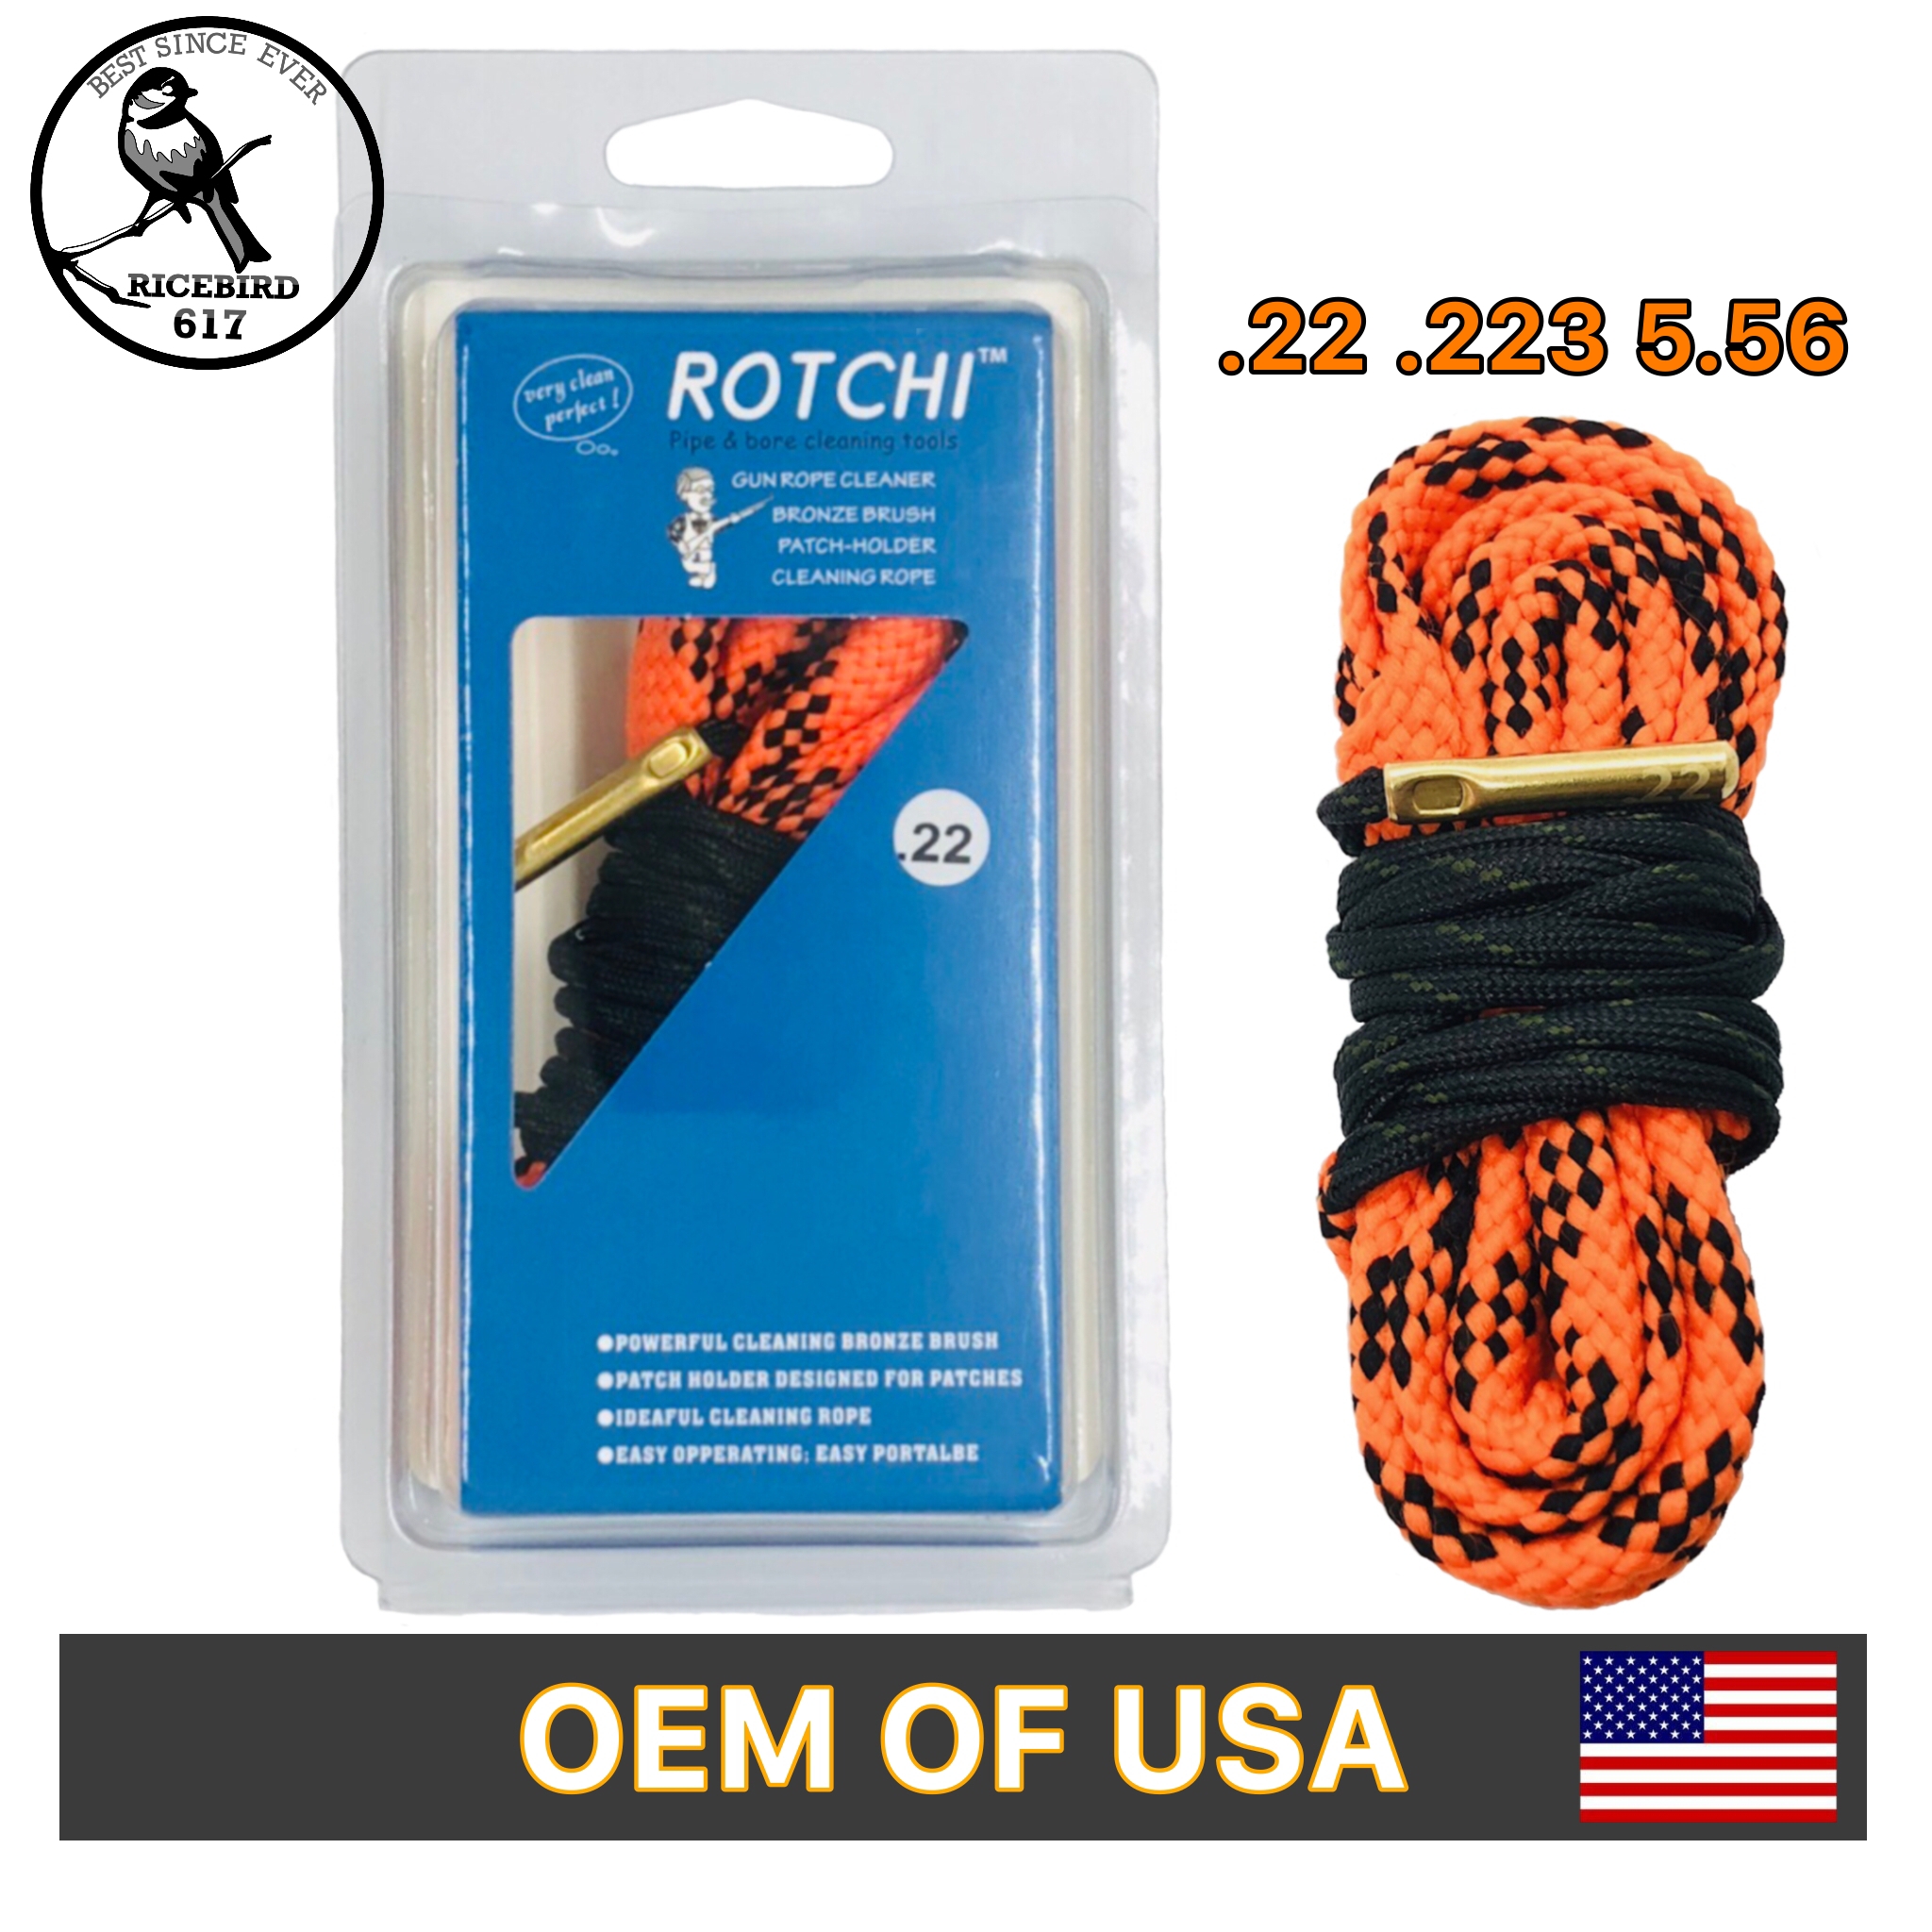 Rotchi Bore Snake แส้งู  ทำความสะอาดลำกล้องปืน  .17 .22 .223/5.56 .308 .357/ .38/9 mm .45  ลูกซองขนาด 12 GA เป็นงาน OEM จากโรงงานที่ทำส่งแบรนด์ใน USA